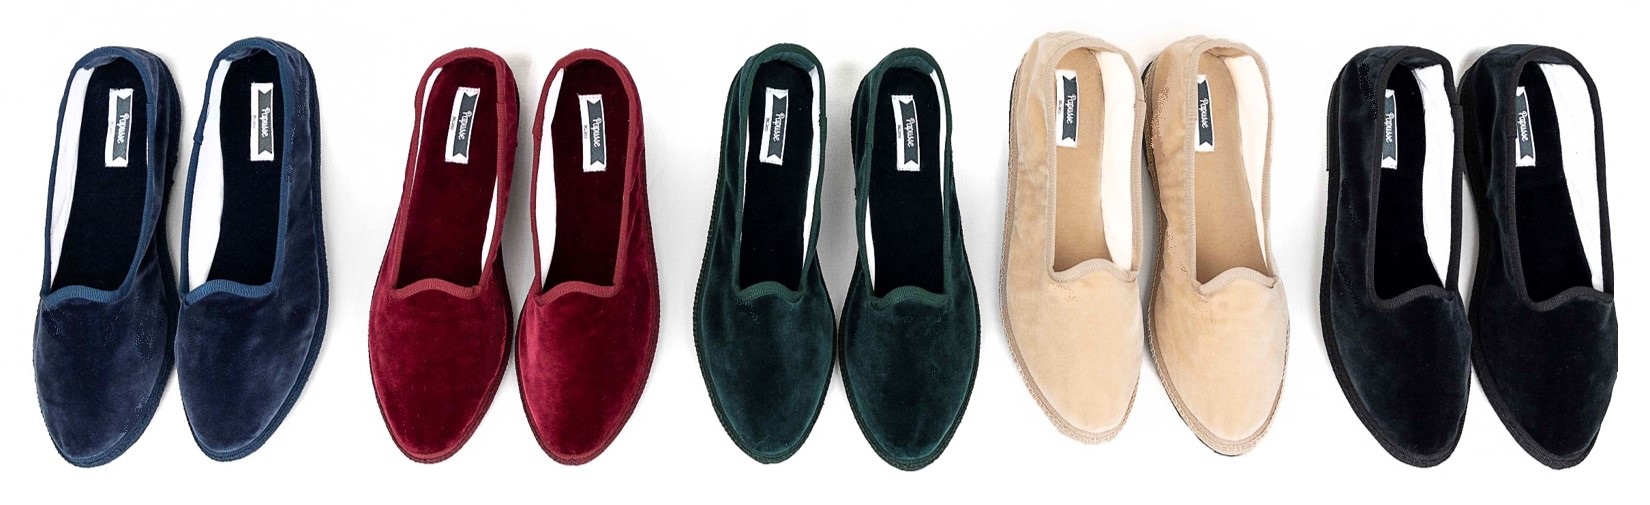 scarpe friulane - Papusse velvet slippers